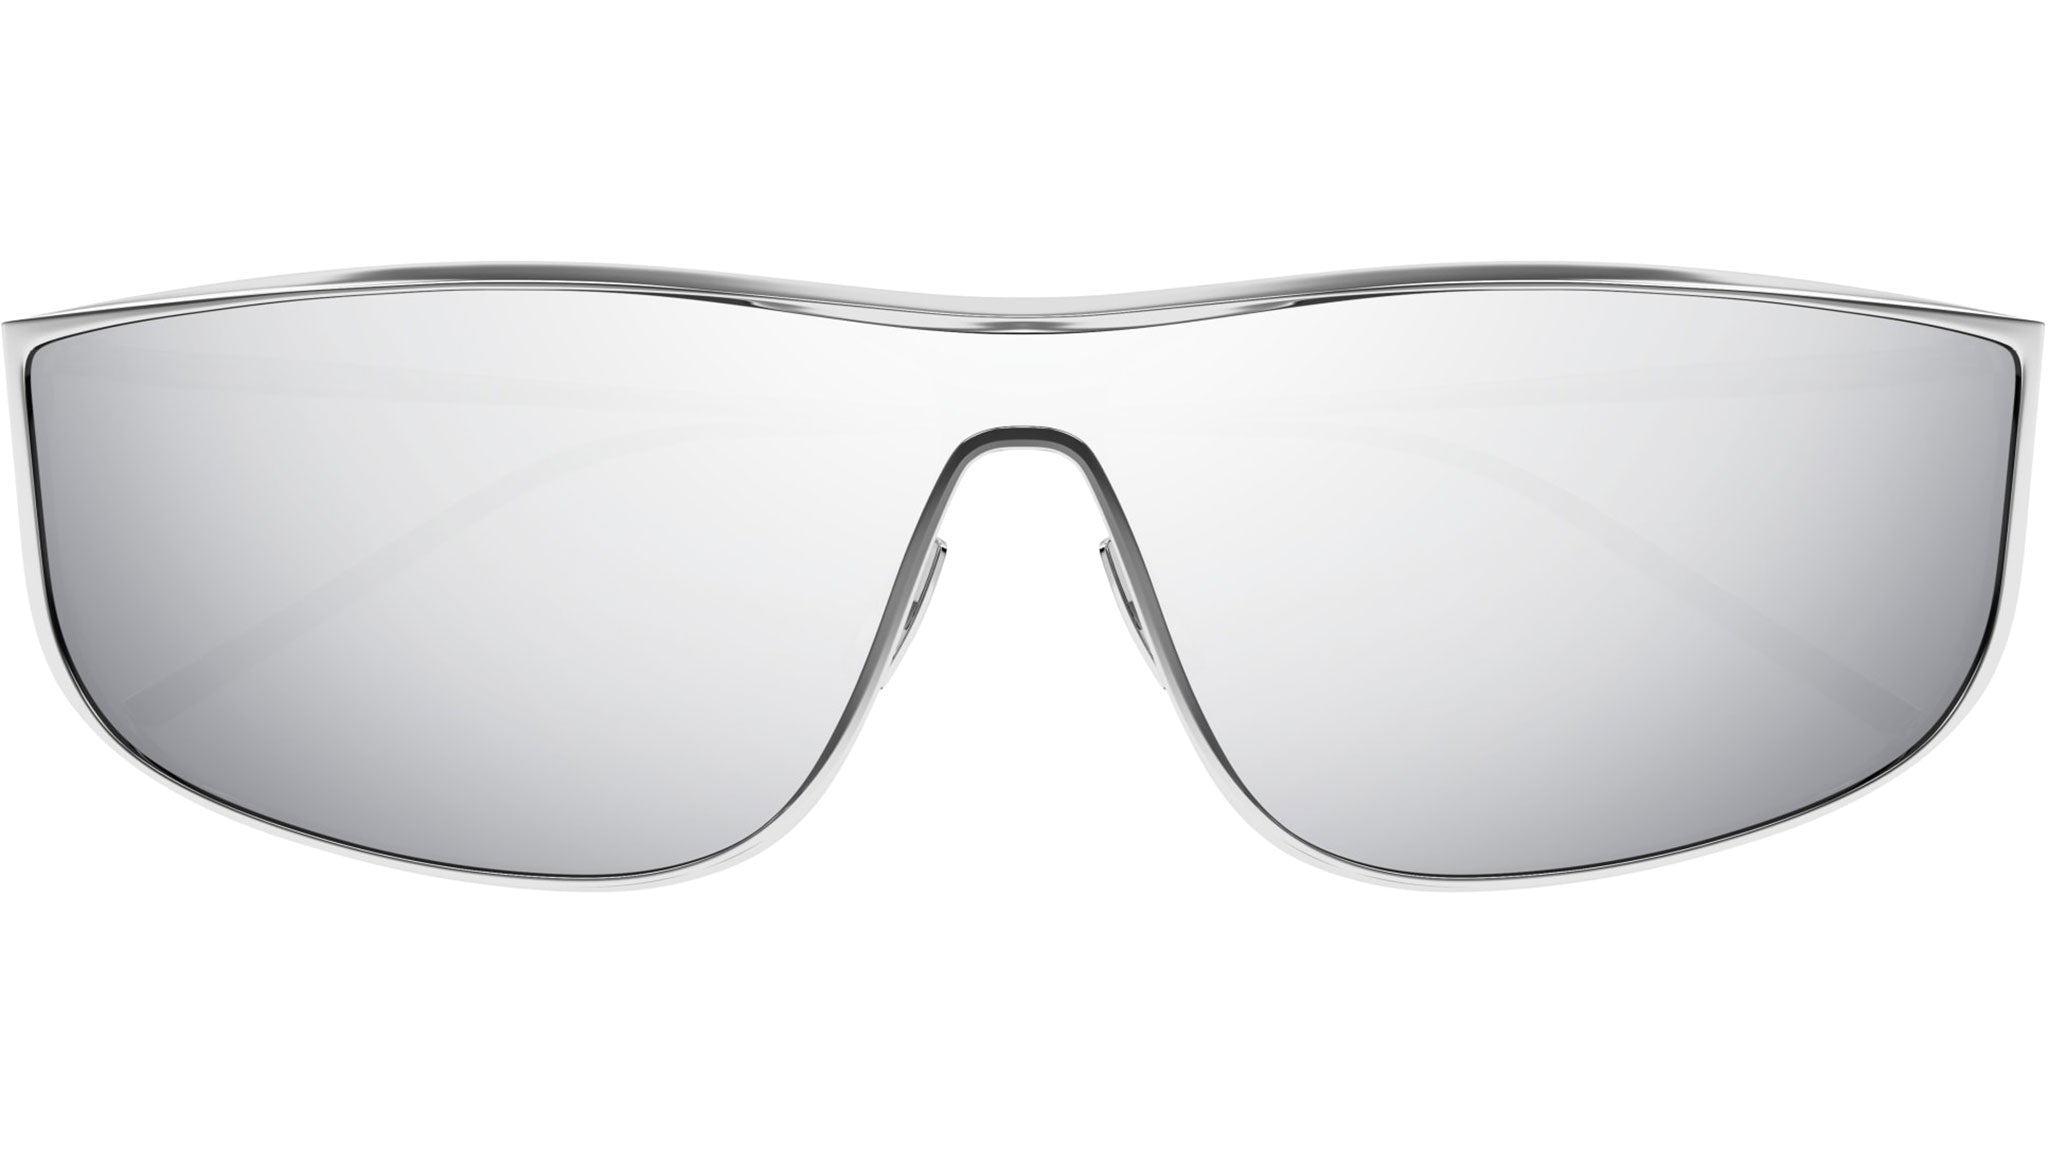 Saint Laurent SL 605 Luna 003 Silver Sunglasses